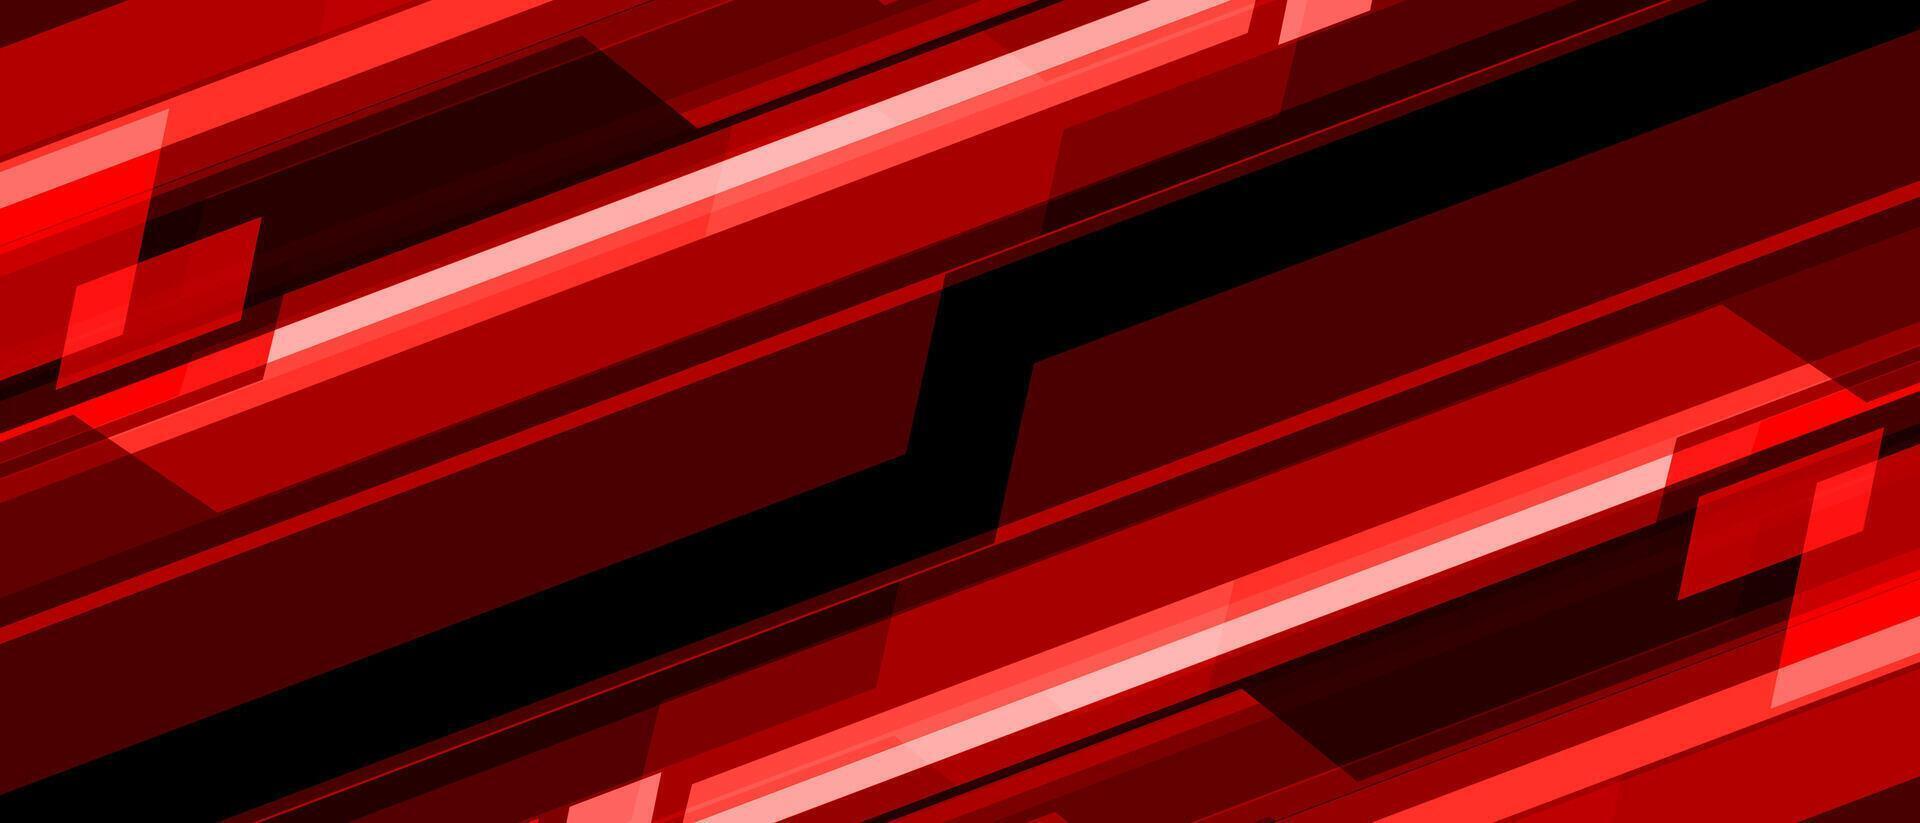 abstrakt rot schwarz Cyber Licht Schrägstrich dynamisch geometrisch Technologie futuristisch Überlappung Design modern kreativ Hintergrund Vektor